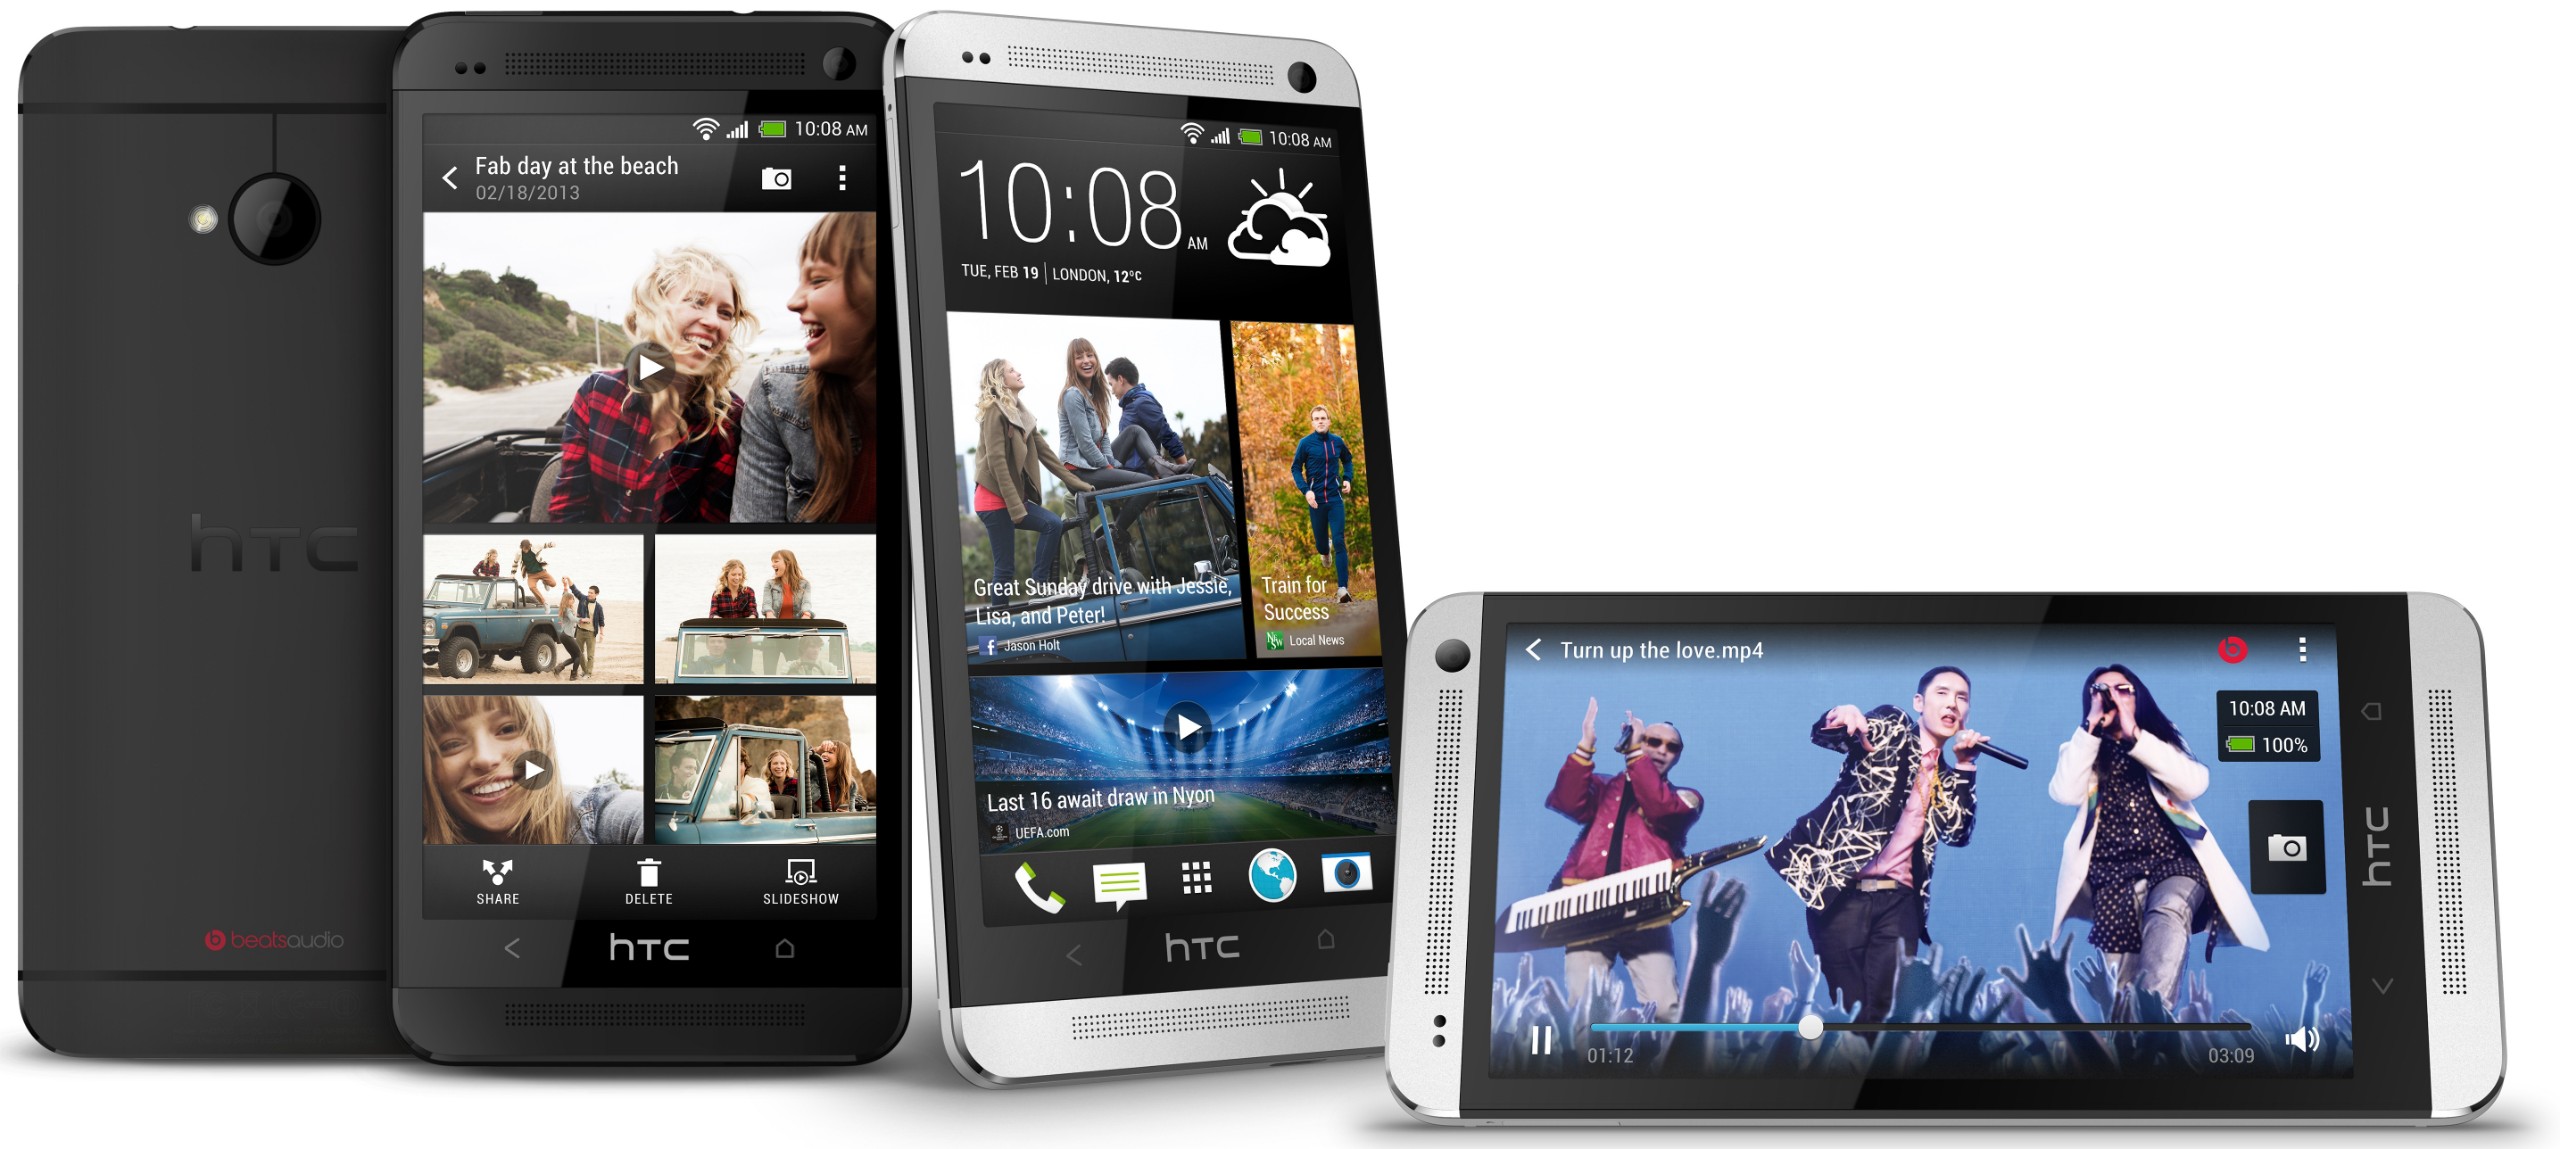 HTC One anunciado: cámara UltraPixel, pantalla de 1080p y un camino de regreso a la relevancia.